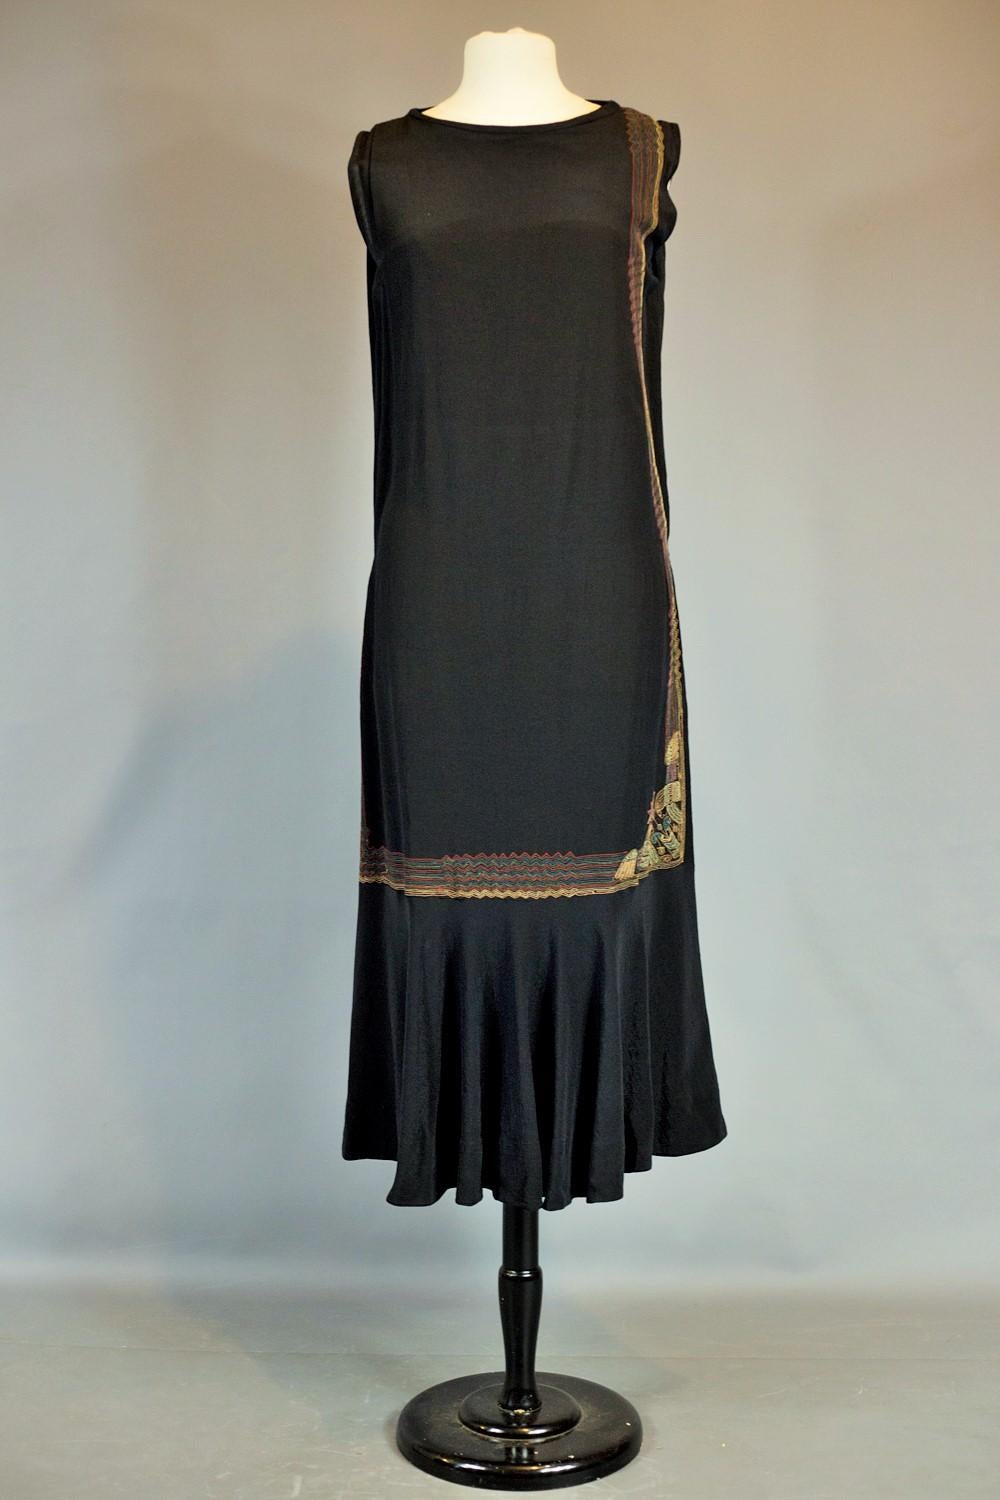 Um 1930/1935
Frankreich oder Europa

Weites Kleid aus schwarzem ottomanischem Seidenkrepp, bestickt mit polychromem Zickzack im ägyptomanischen Stil der 1930er Jahre. Schräg genähtes, ärmelloses, gerades Kleid mit mechanischer Stickerei, die von der